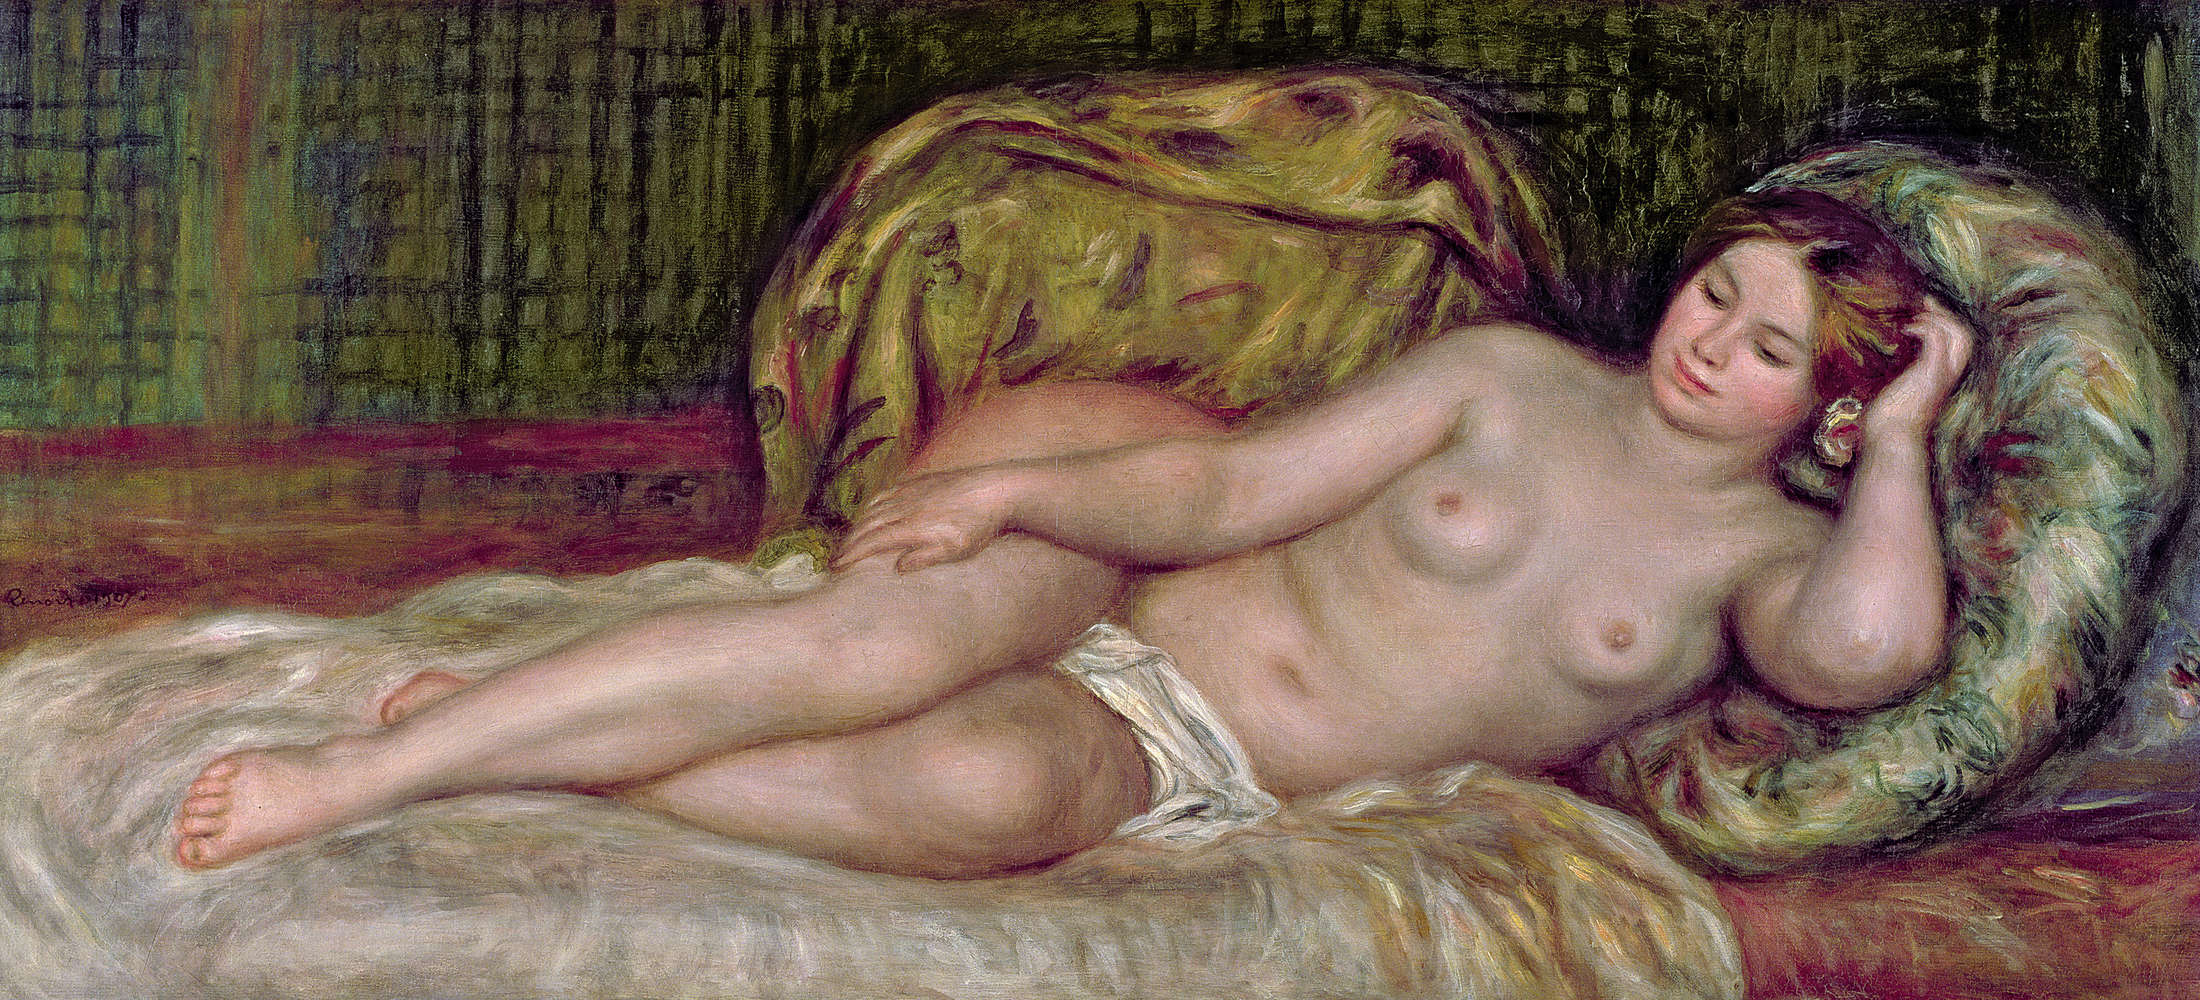             Nude" mural by Pierre Auguste Renoir
        